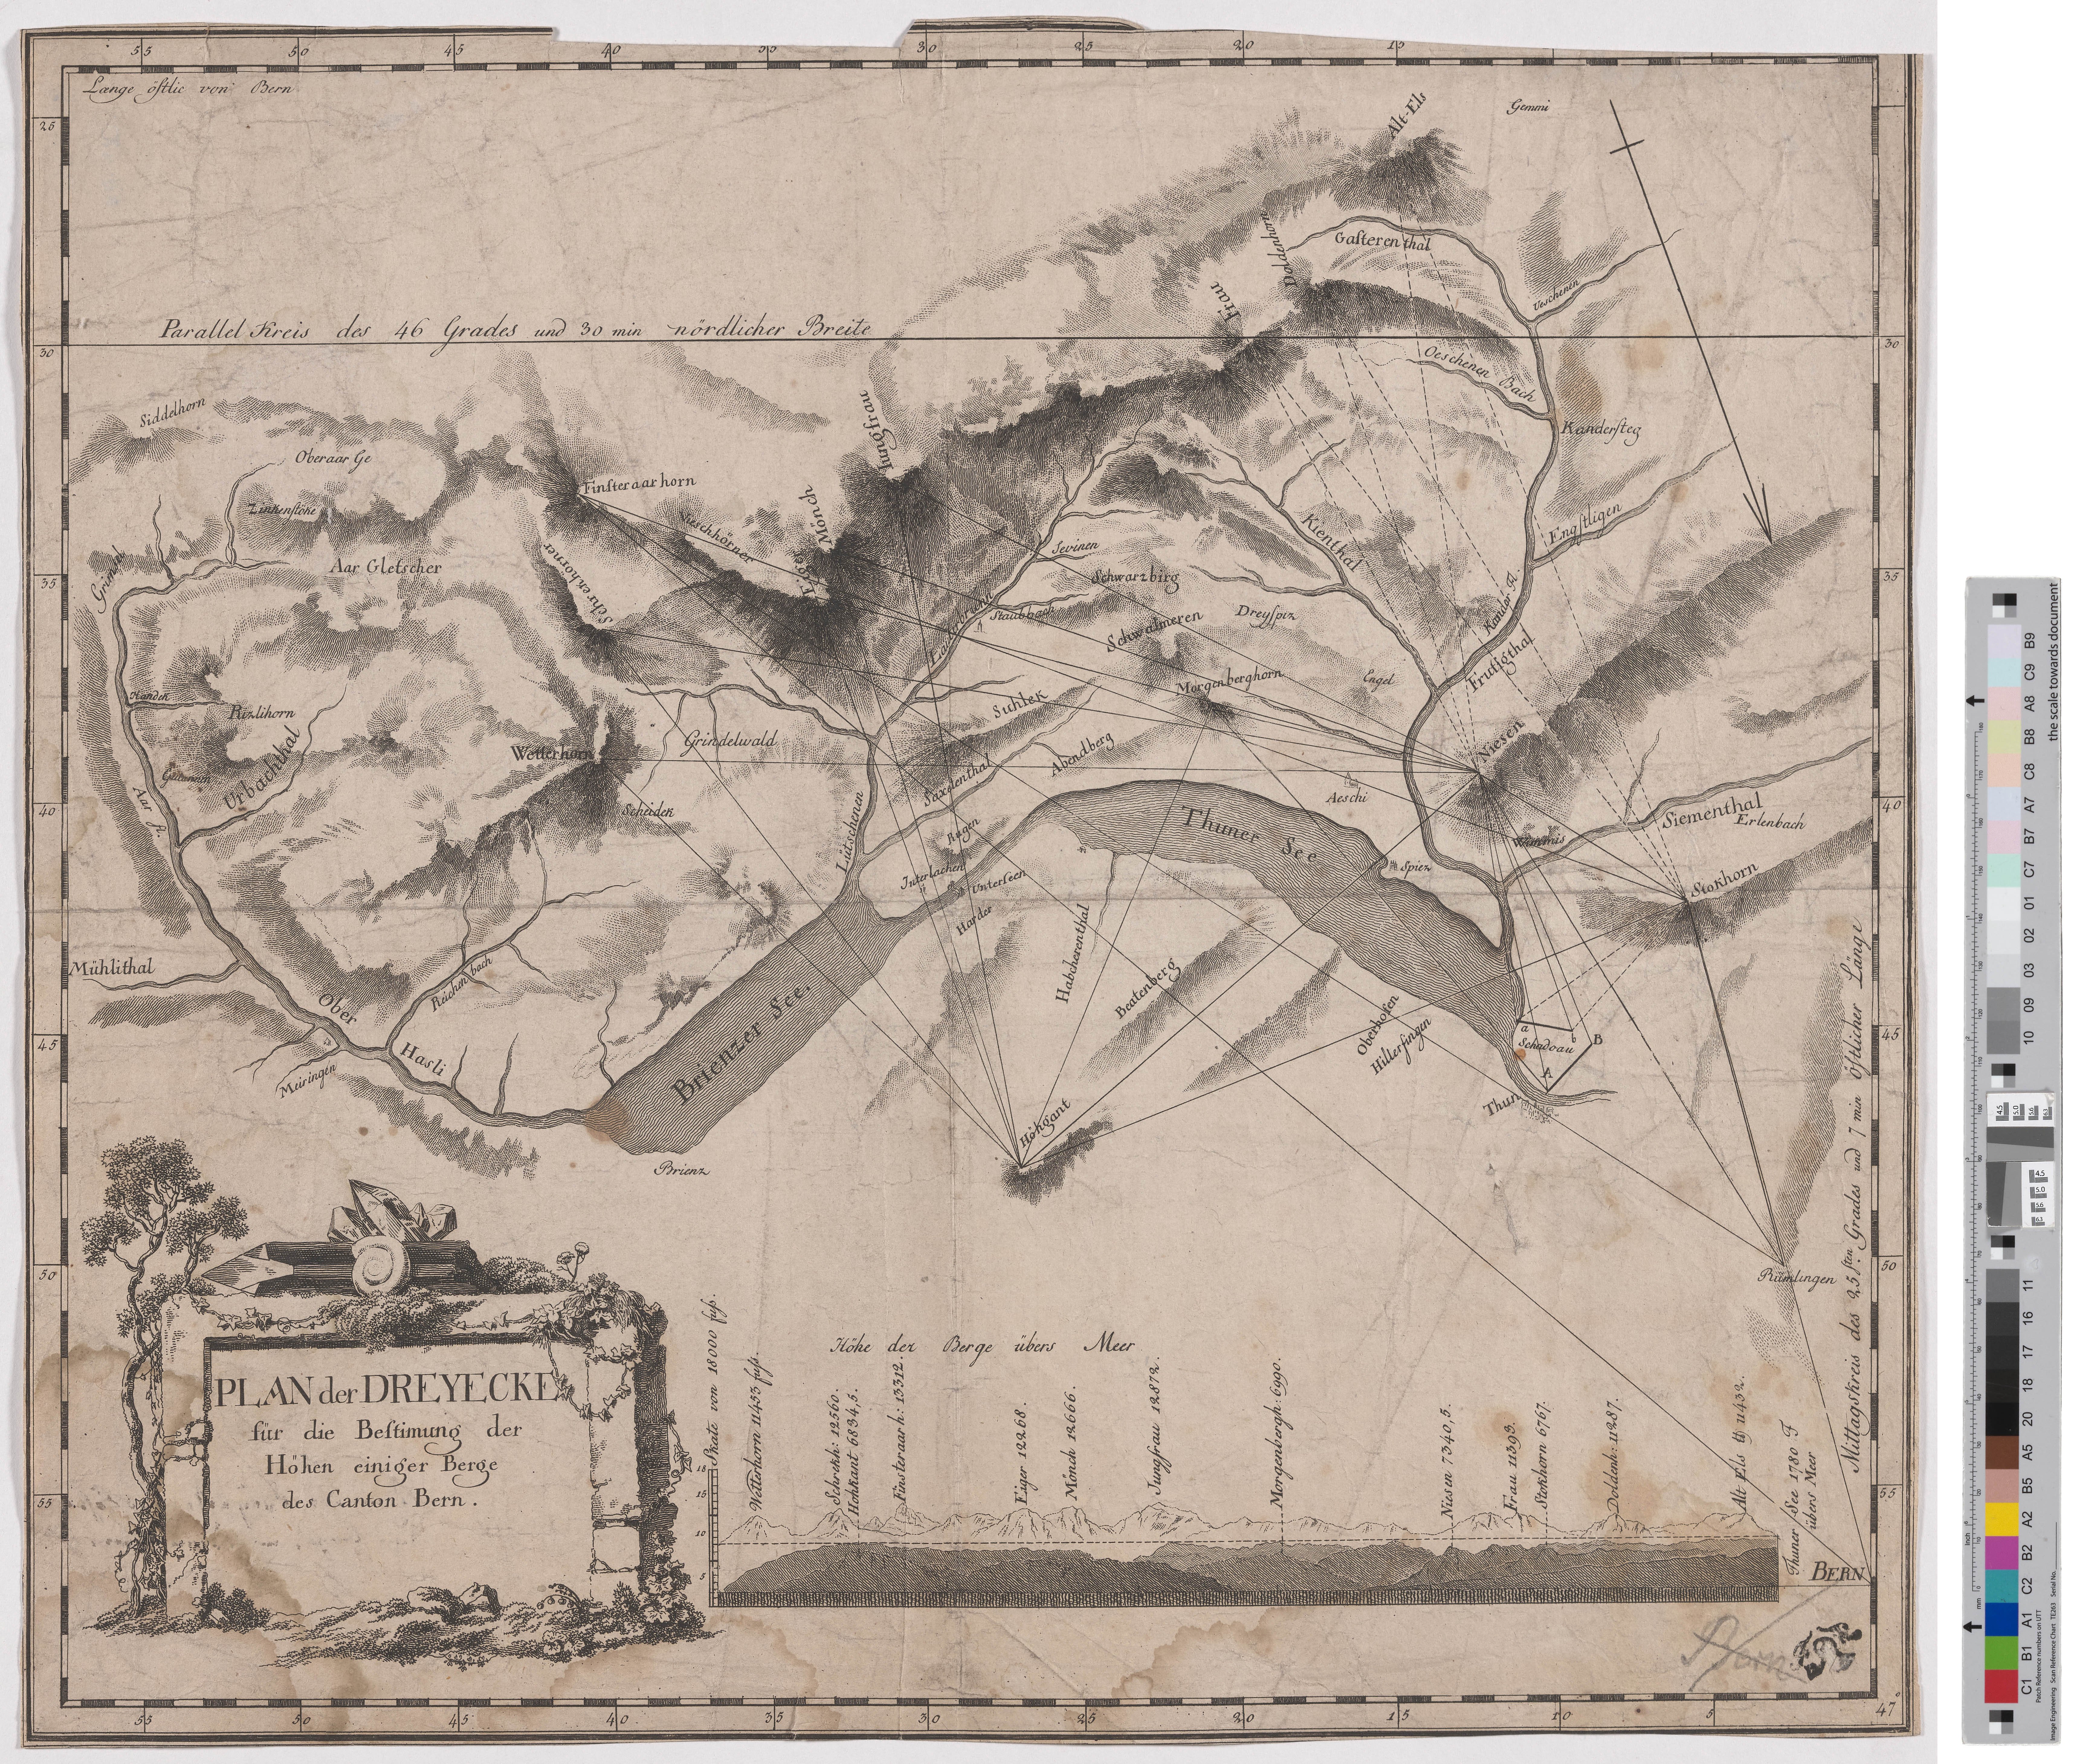 Landkarte "Plan der Dreyecke für die Bestimung der Höhen einiger Berge des Canton Bern" (Kreismuseum Grimma RR-F)